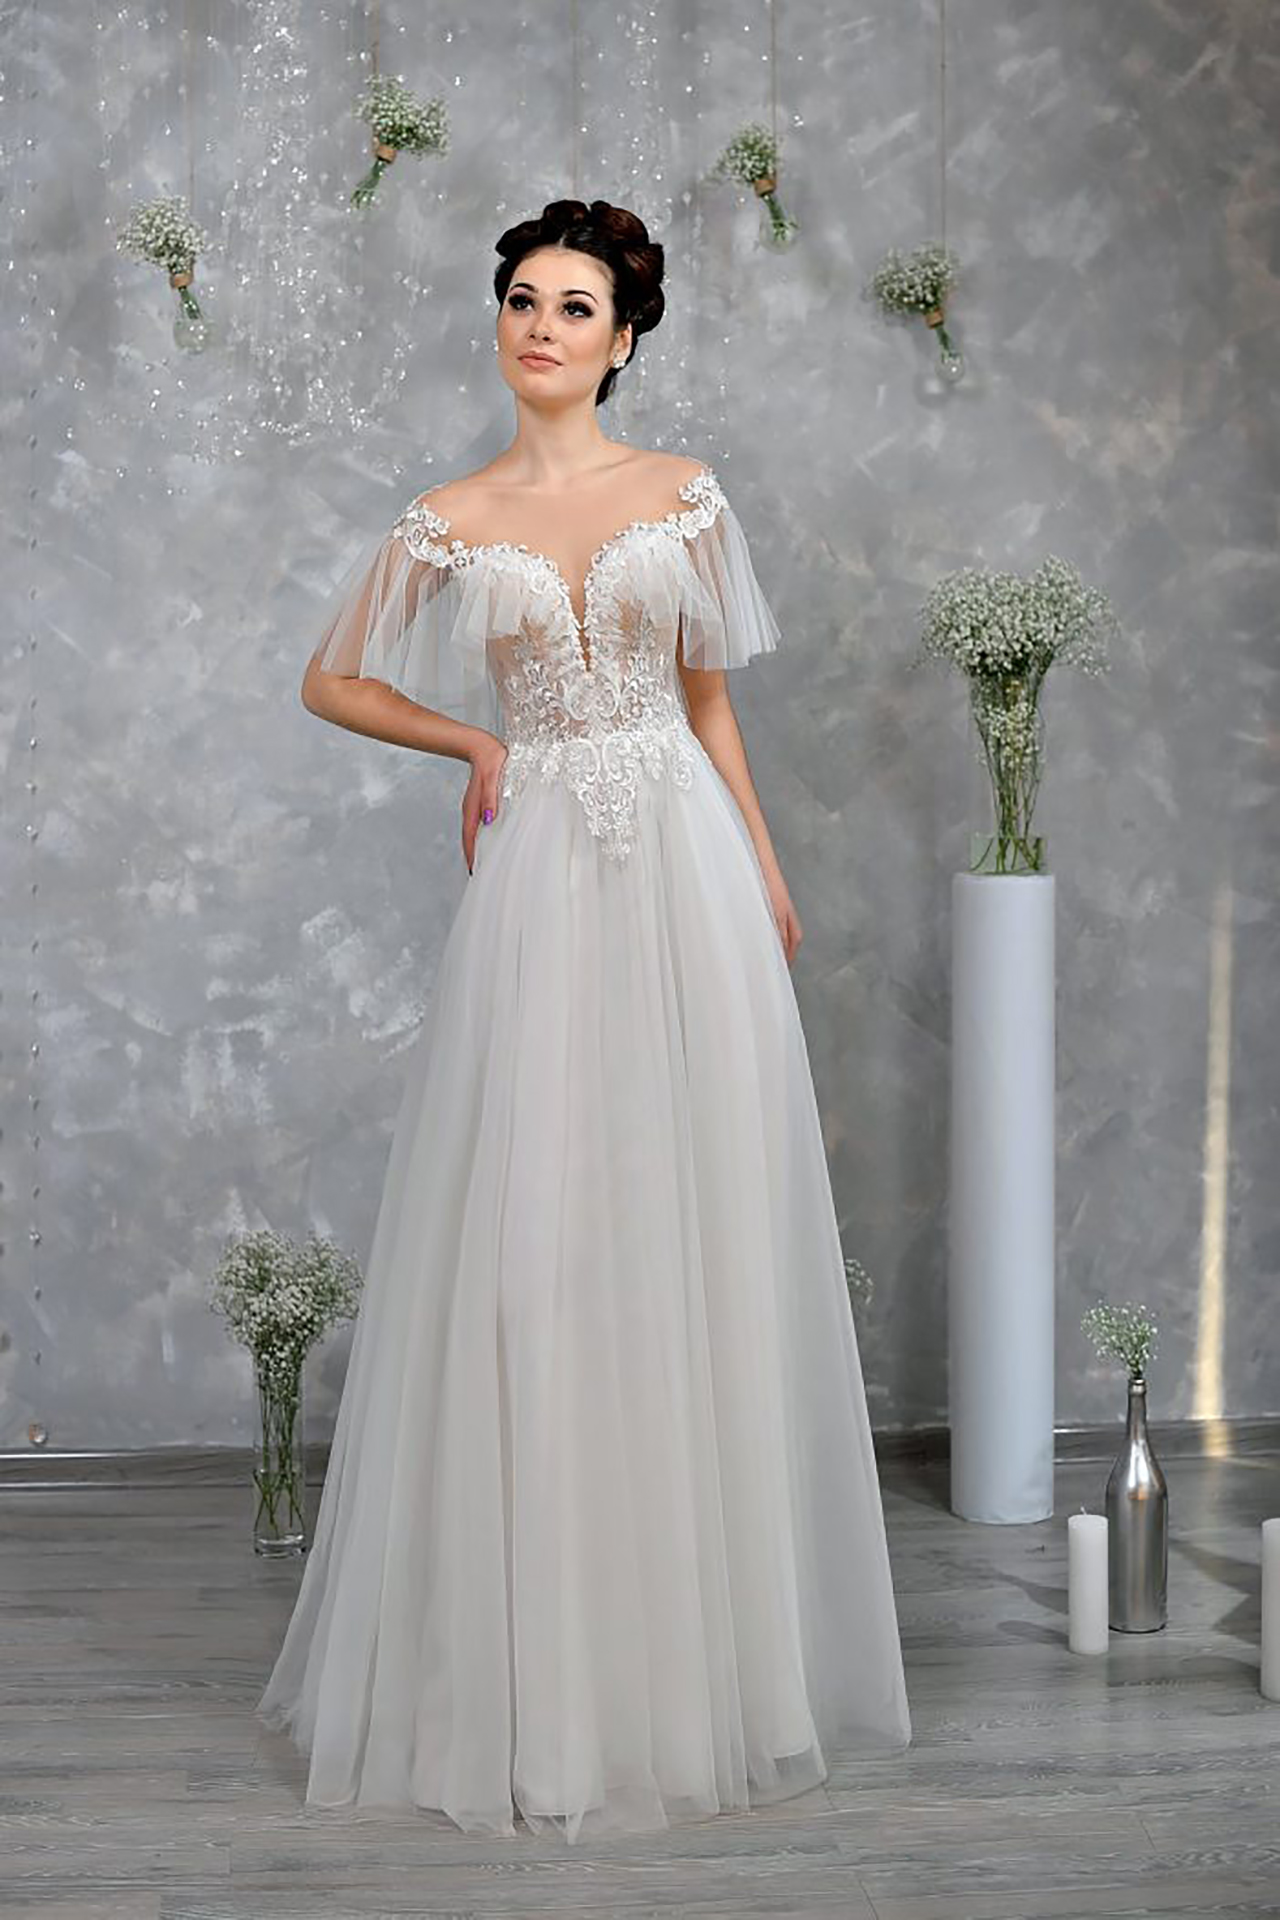 Romantic Boho wedding dress, Tulle wedding gown, A-line wedding dress, Elegant chiffon bridal gown, Ariadna